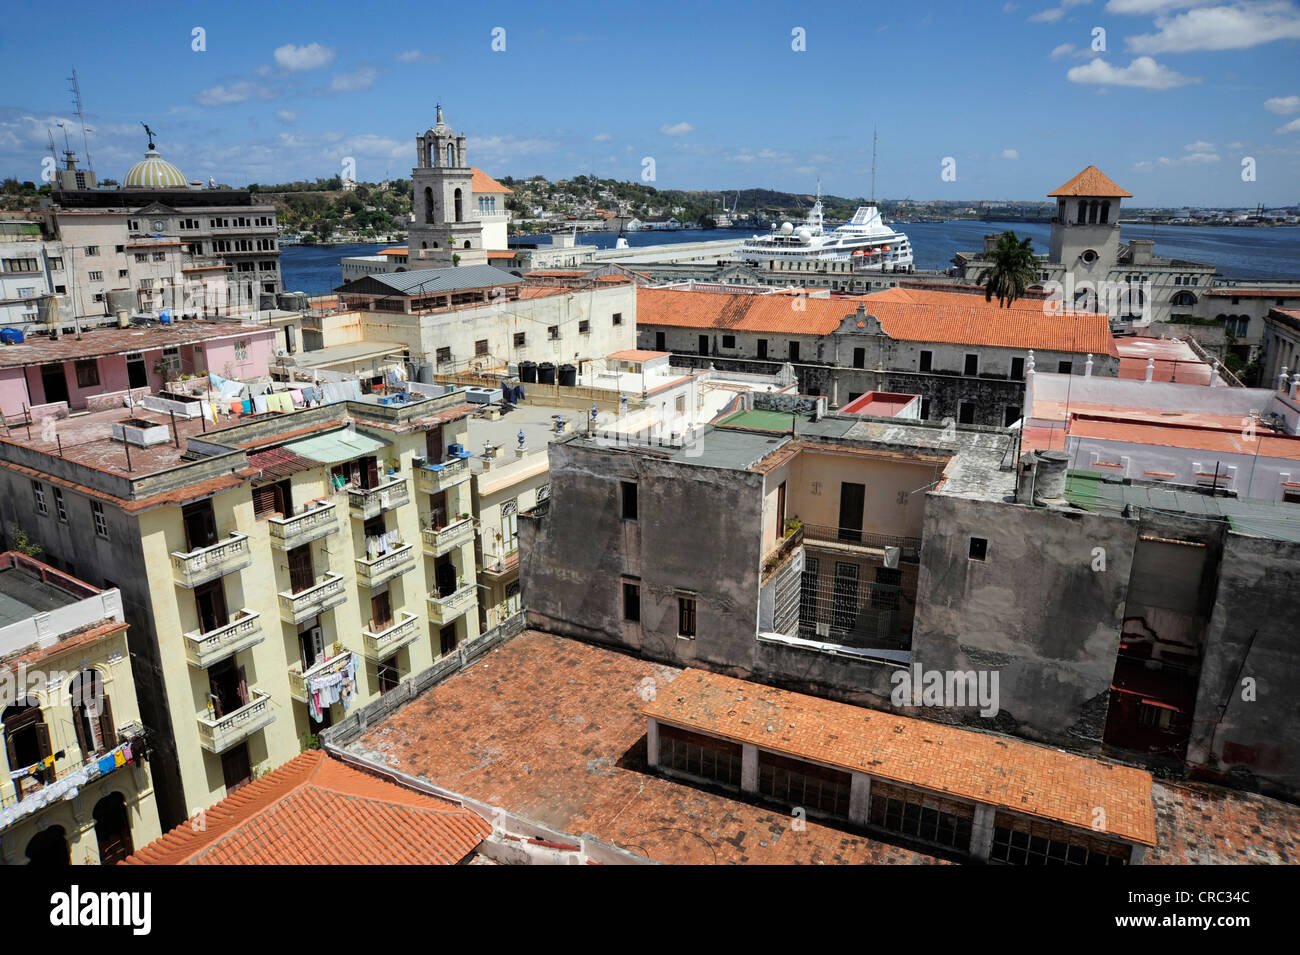 Puerto, vistas de los tejados, el barrio histórico de la Ciudad de La Habana, Habana Vieja, La Habana Vieja, Cuba, Antillas Mayores, el Caribe Foto de stock